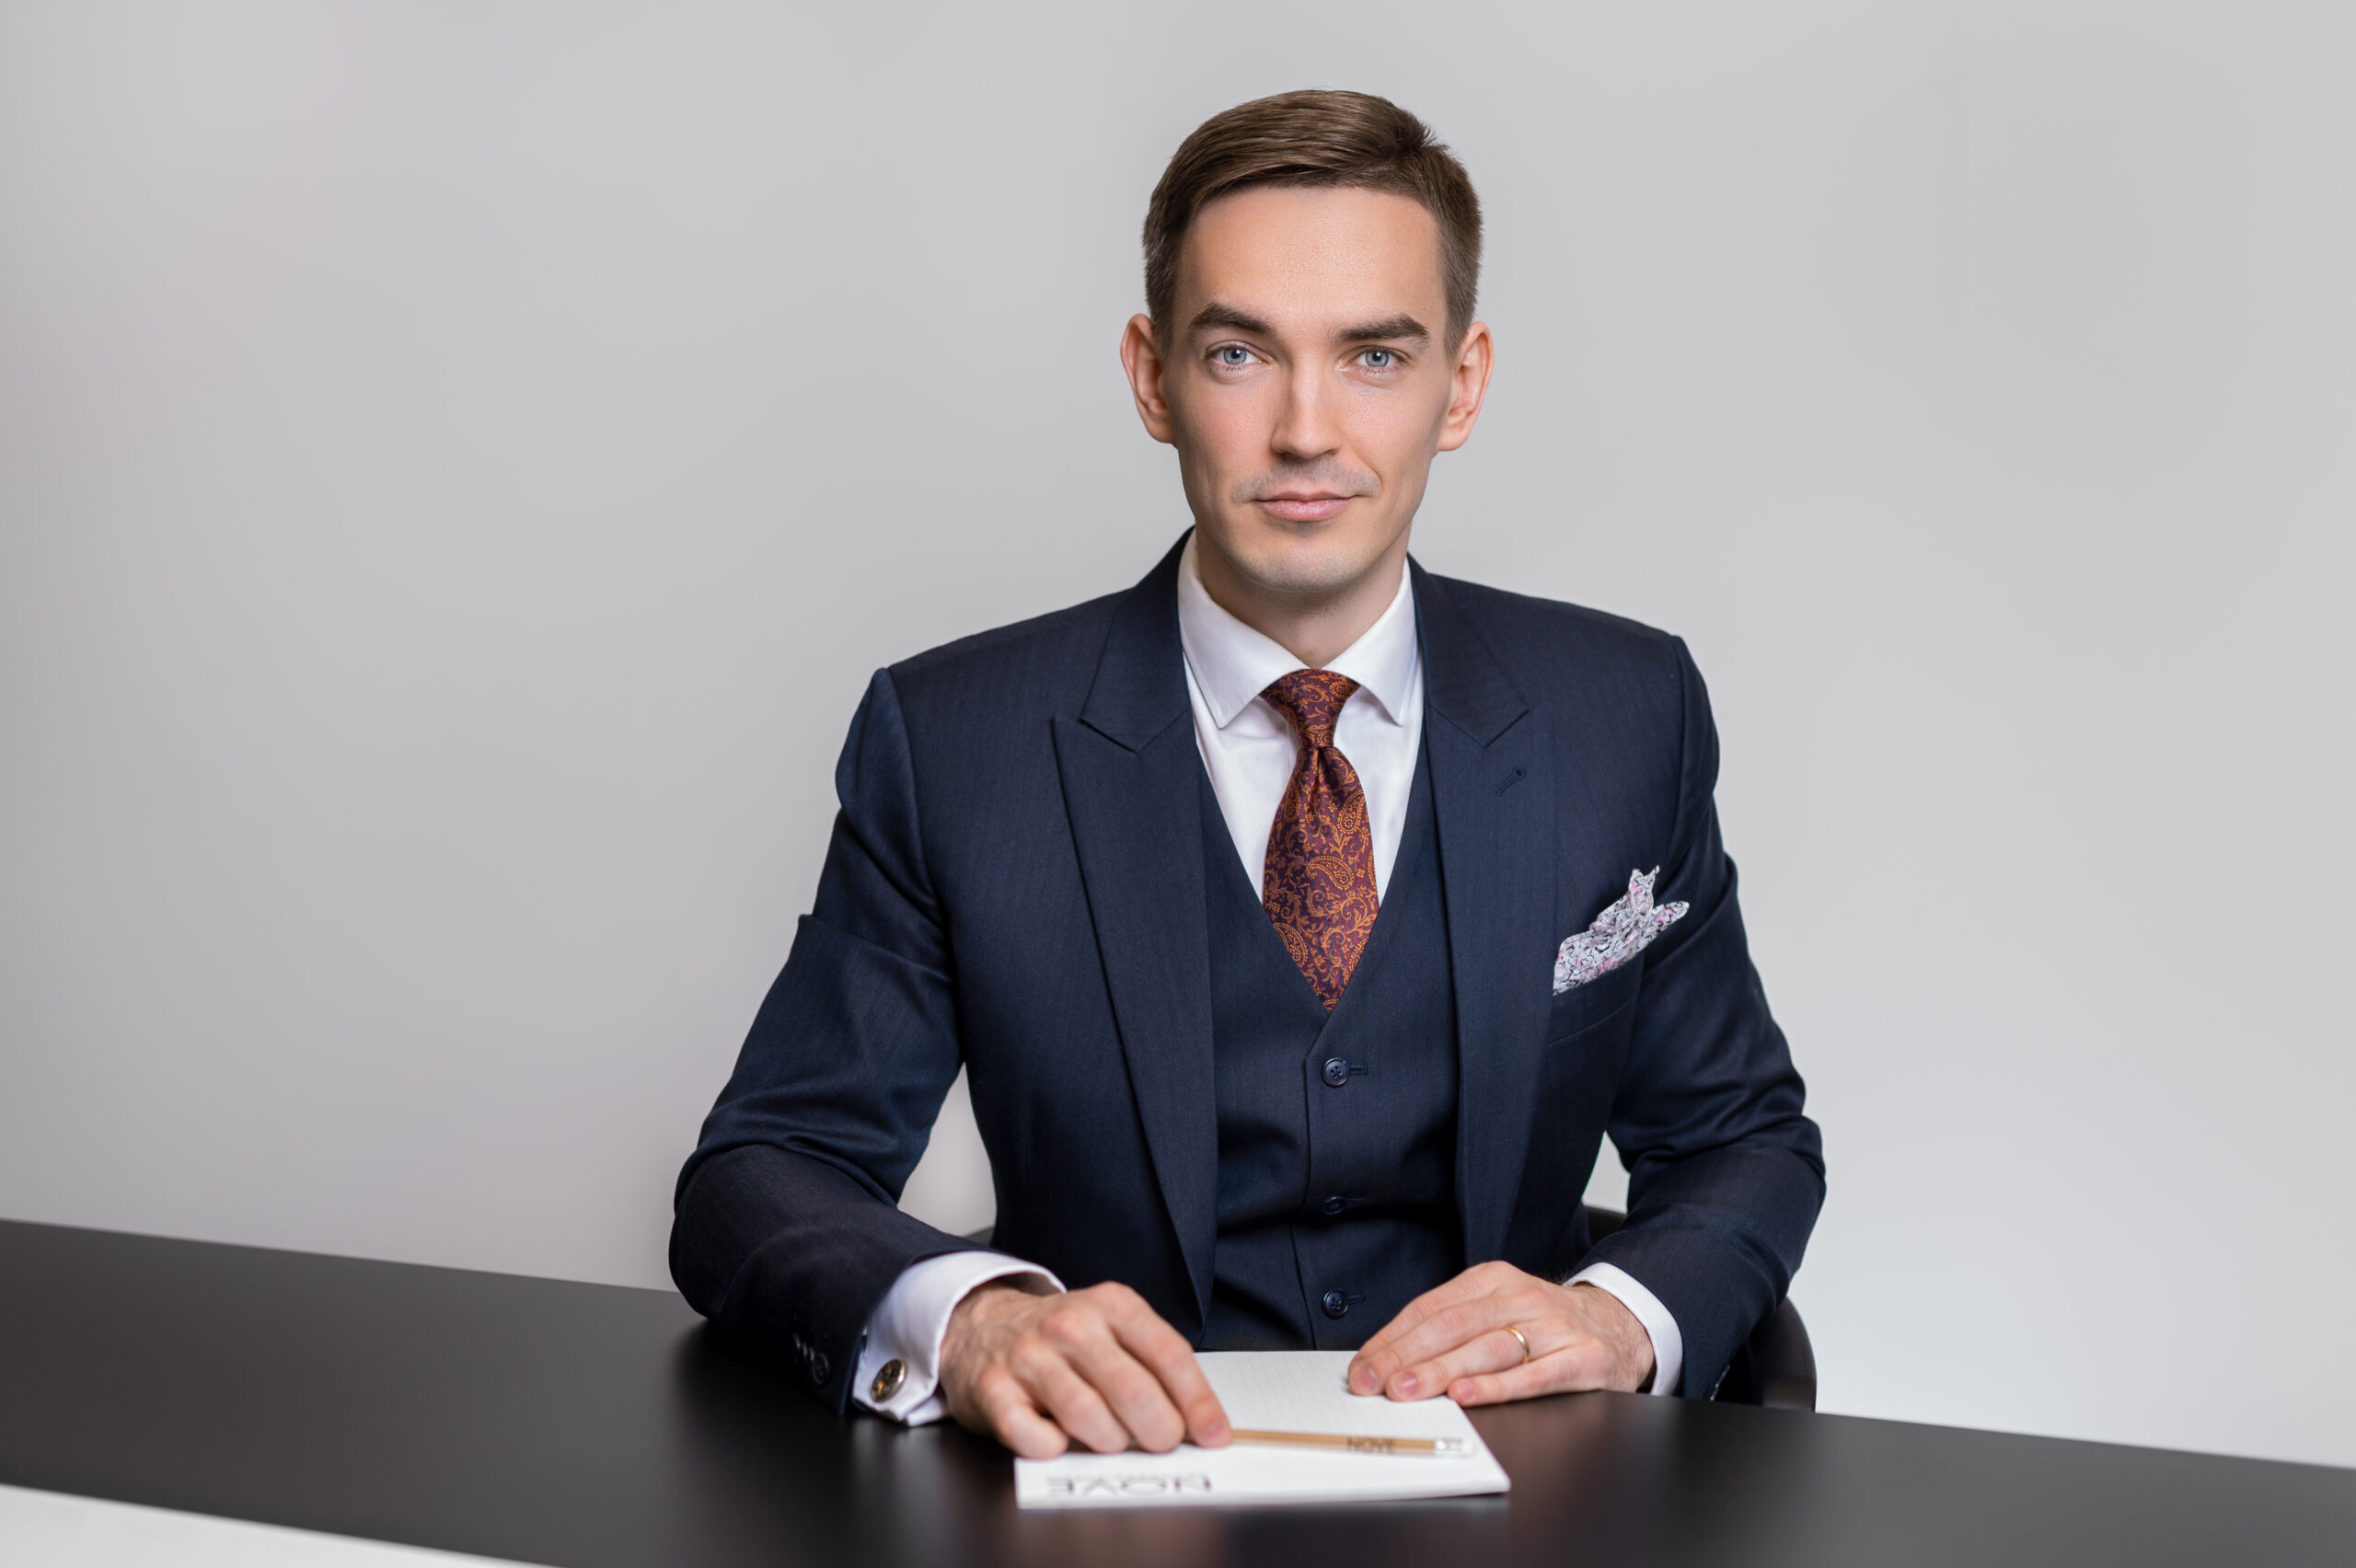 NOVE riigihankeõiguse advokaat Mart Parind esindas Eesti Teadusagentuuri (ETAG) edukalt euroraha kasutamist puudutanud kohtuvaidluses Riigi Tugiteenuste Keskuse